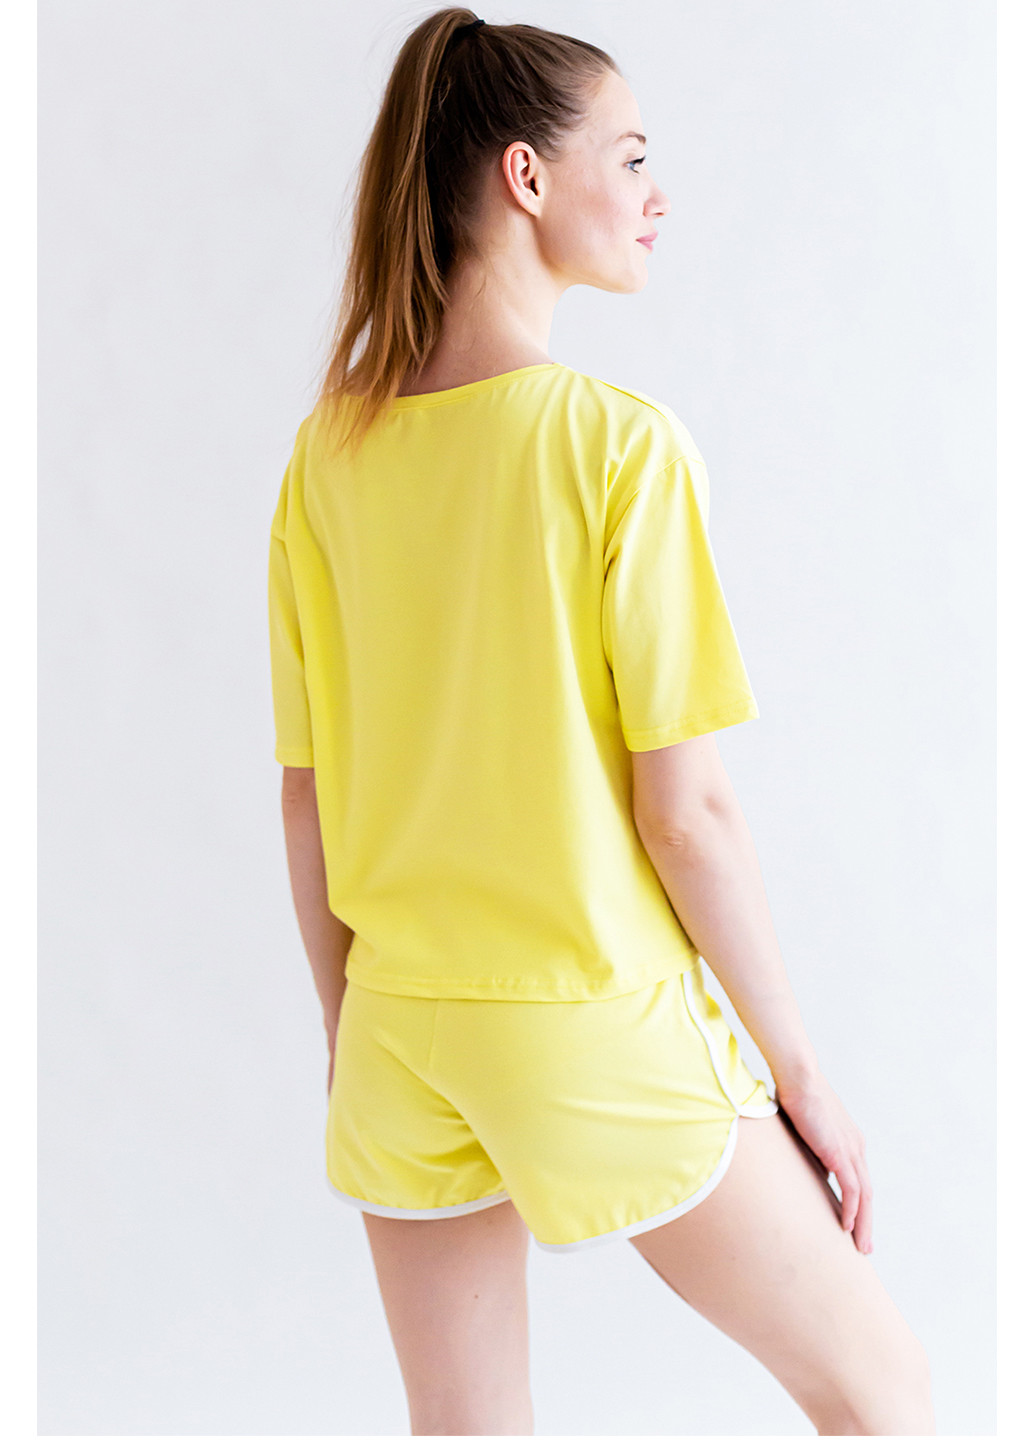 Желтая всесезон комплек женский (футболка и шорты) футболка + шорты Kosta 2173-8